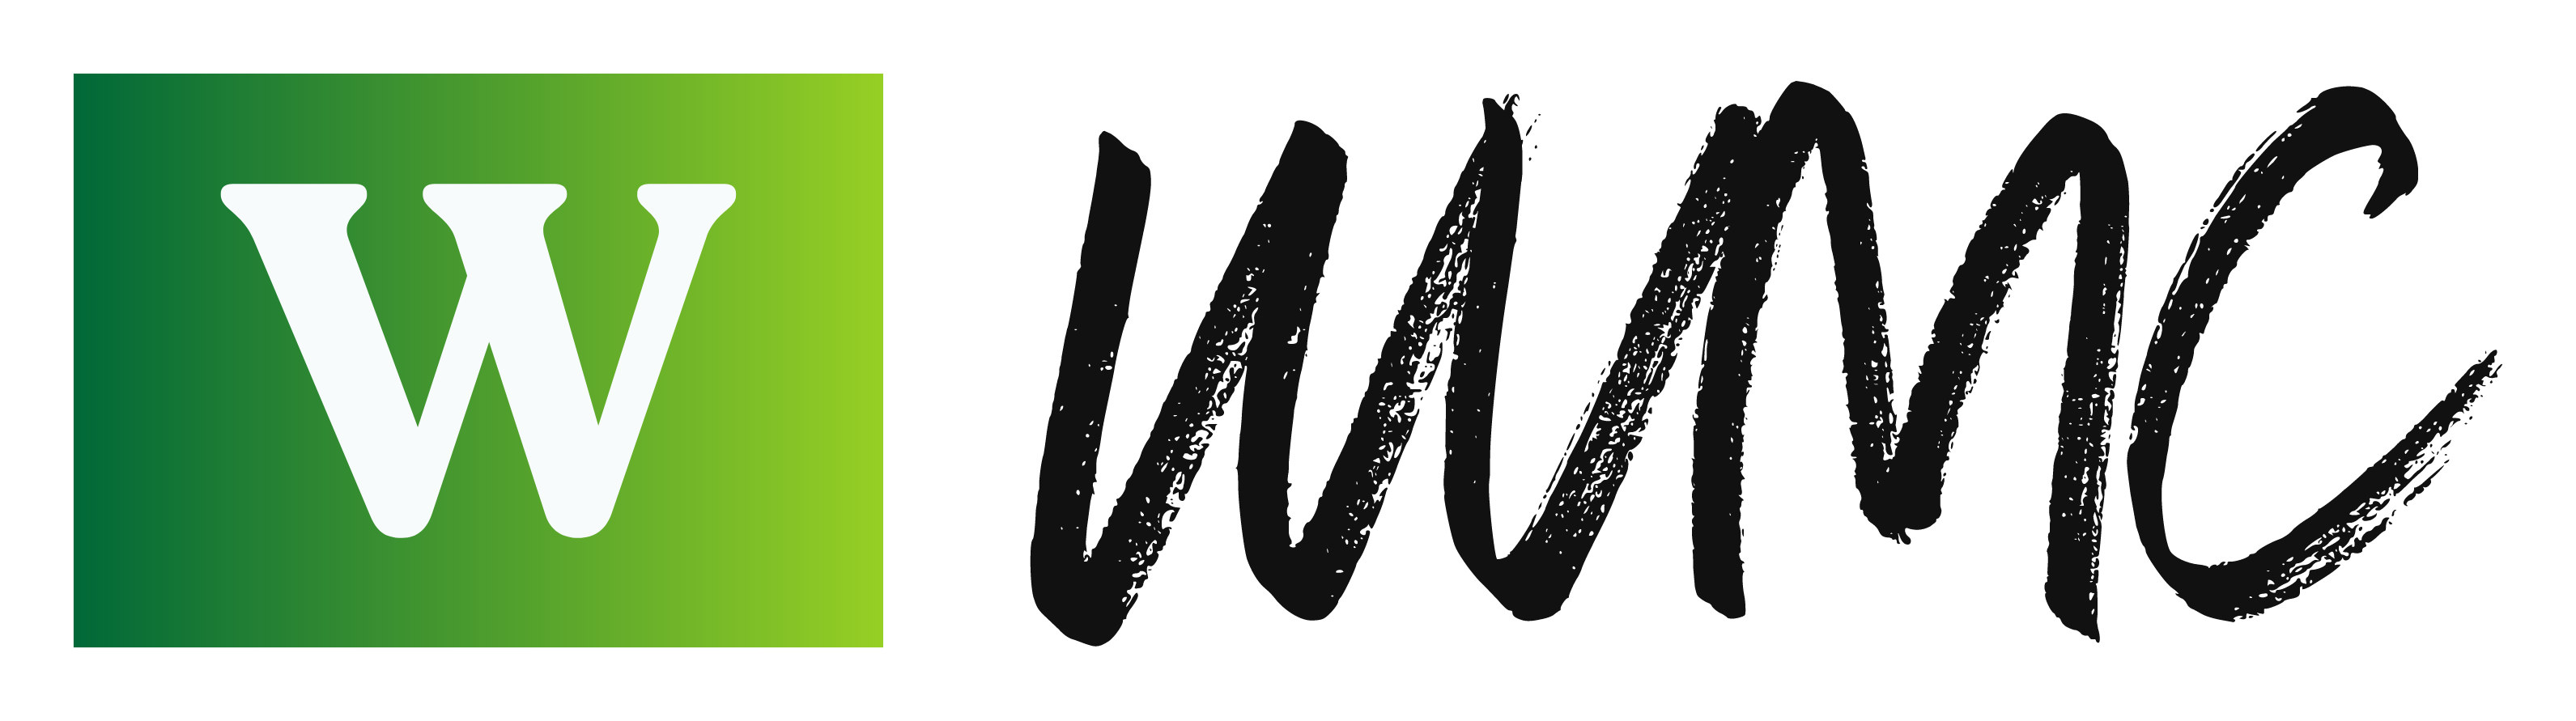 The logo for Walton Village Medical Centre